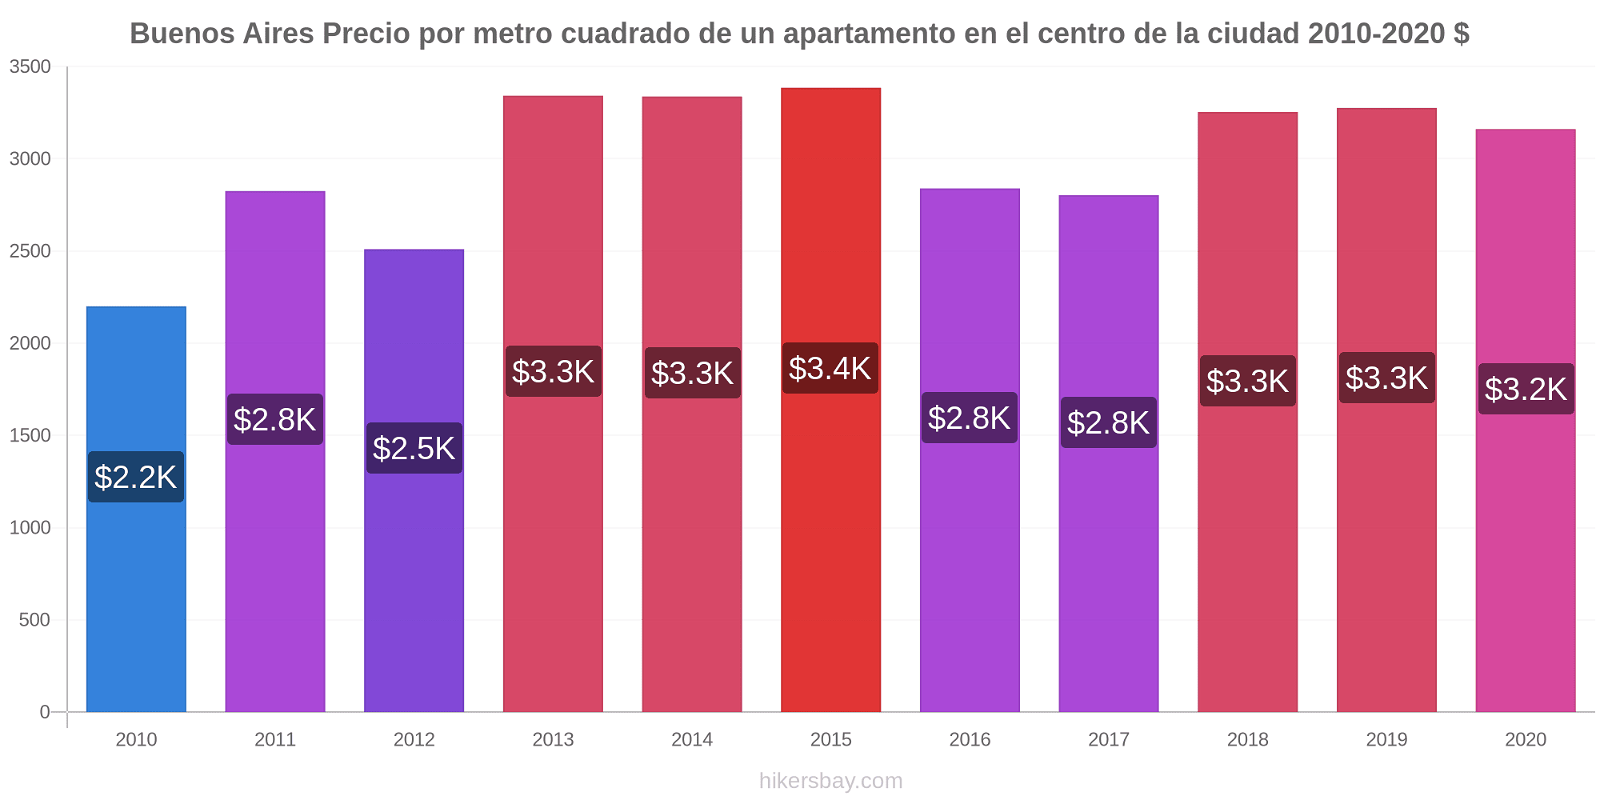 Buenos Aires cambios de precios Precio por metro cuadrado para comprar un apartamento en el centro de la ciudad hikersbay.com